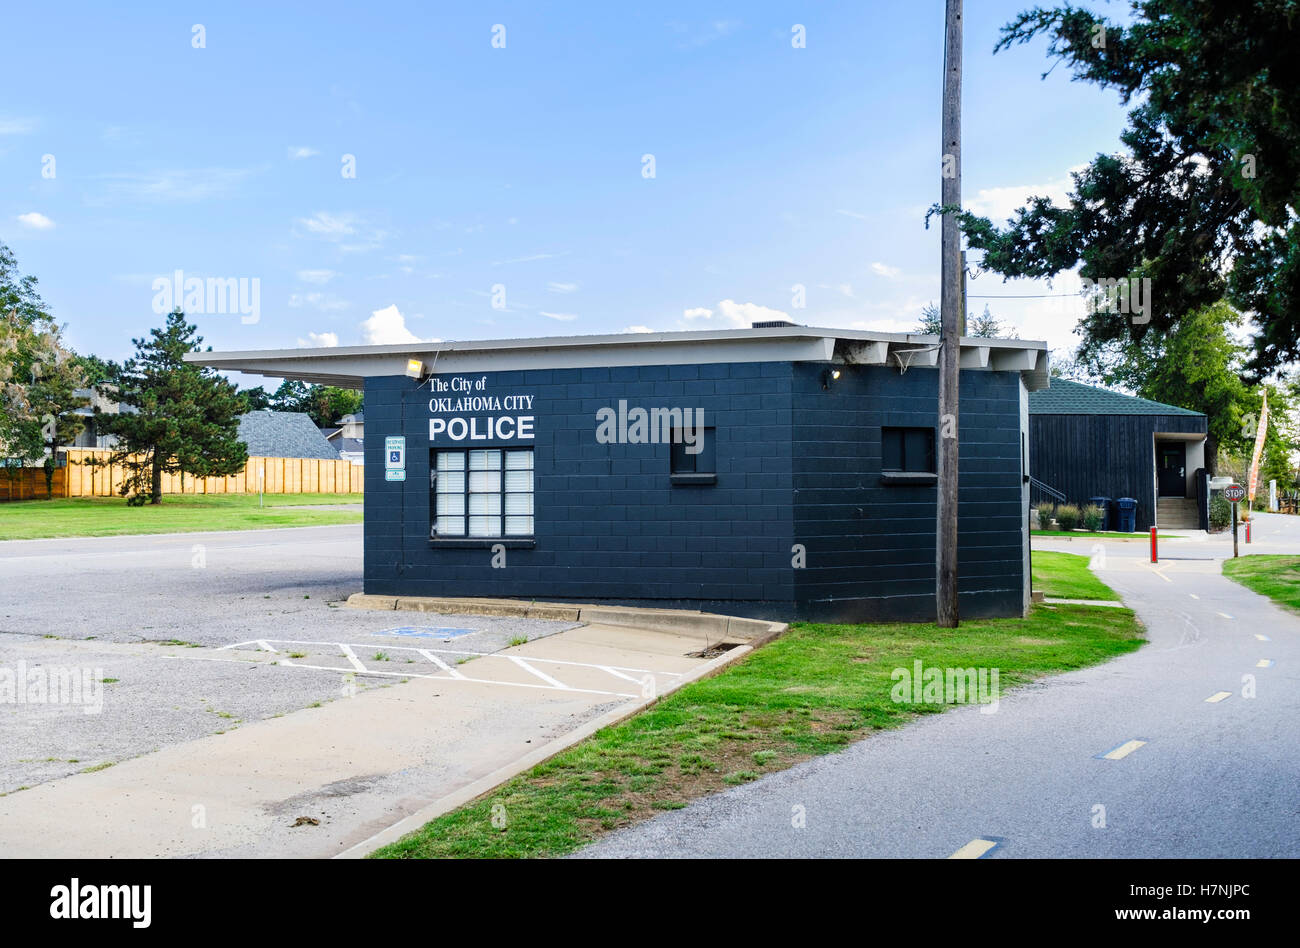 Un satellite a una stazione di polizia vicino a un lago e sentieri di esercizio nella città di Oklahoma, Oklahoma, Stati Uniti d'America. Foto Stock